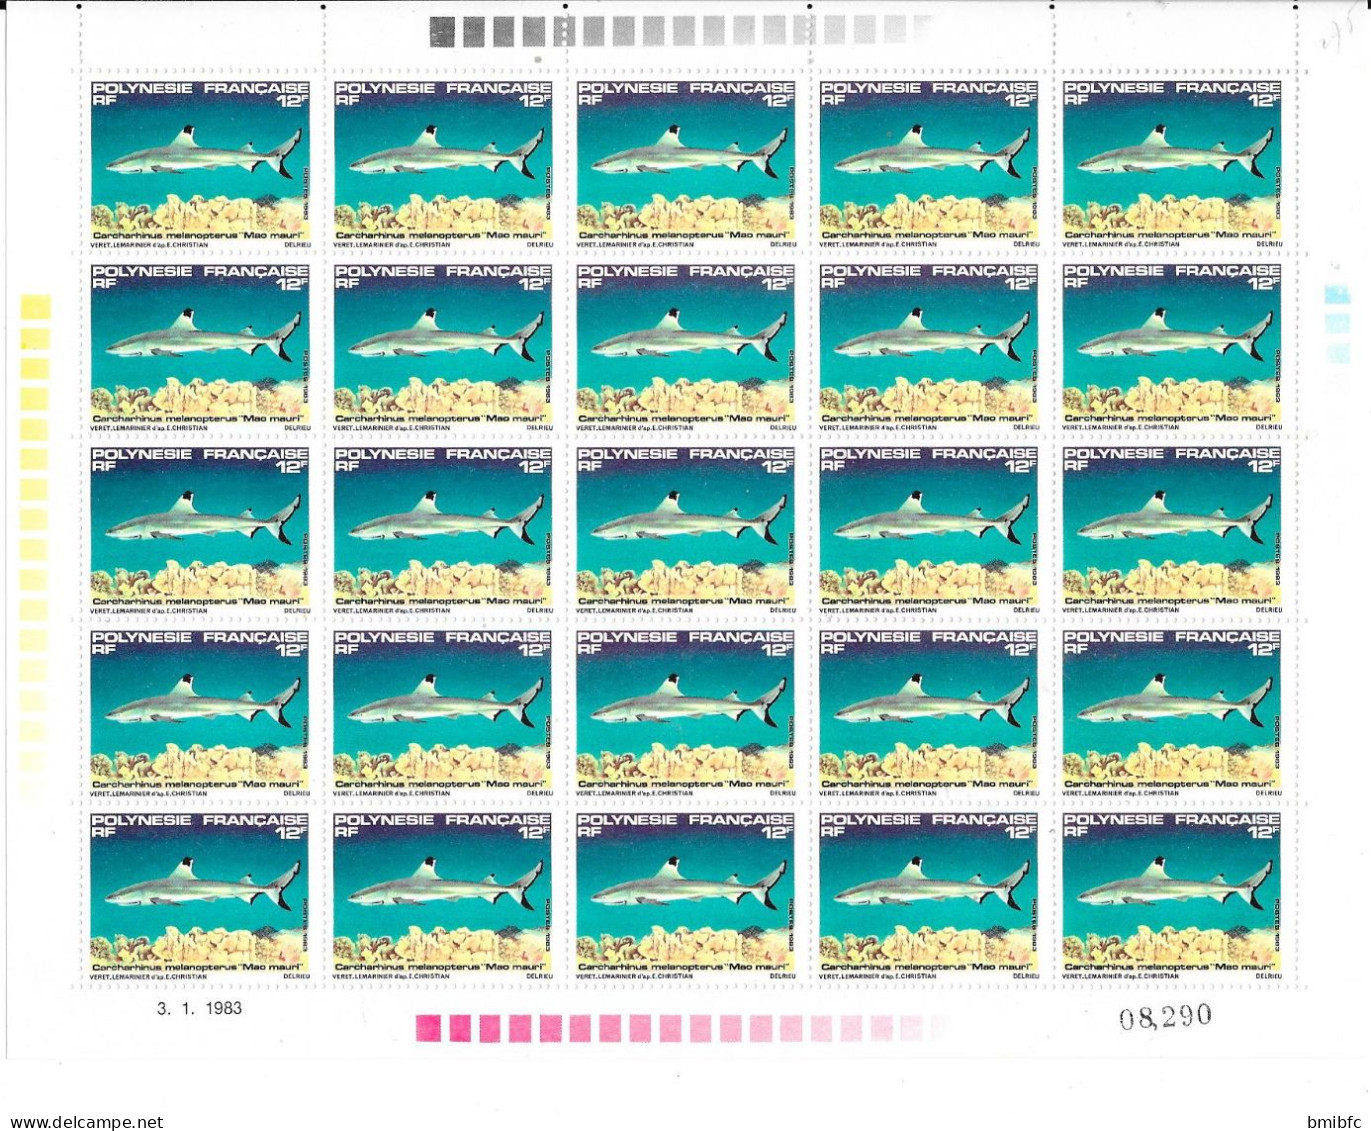 Lot de 343  timbres neufs POLYNÉSIE FRANÇAISE (tous scannés)